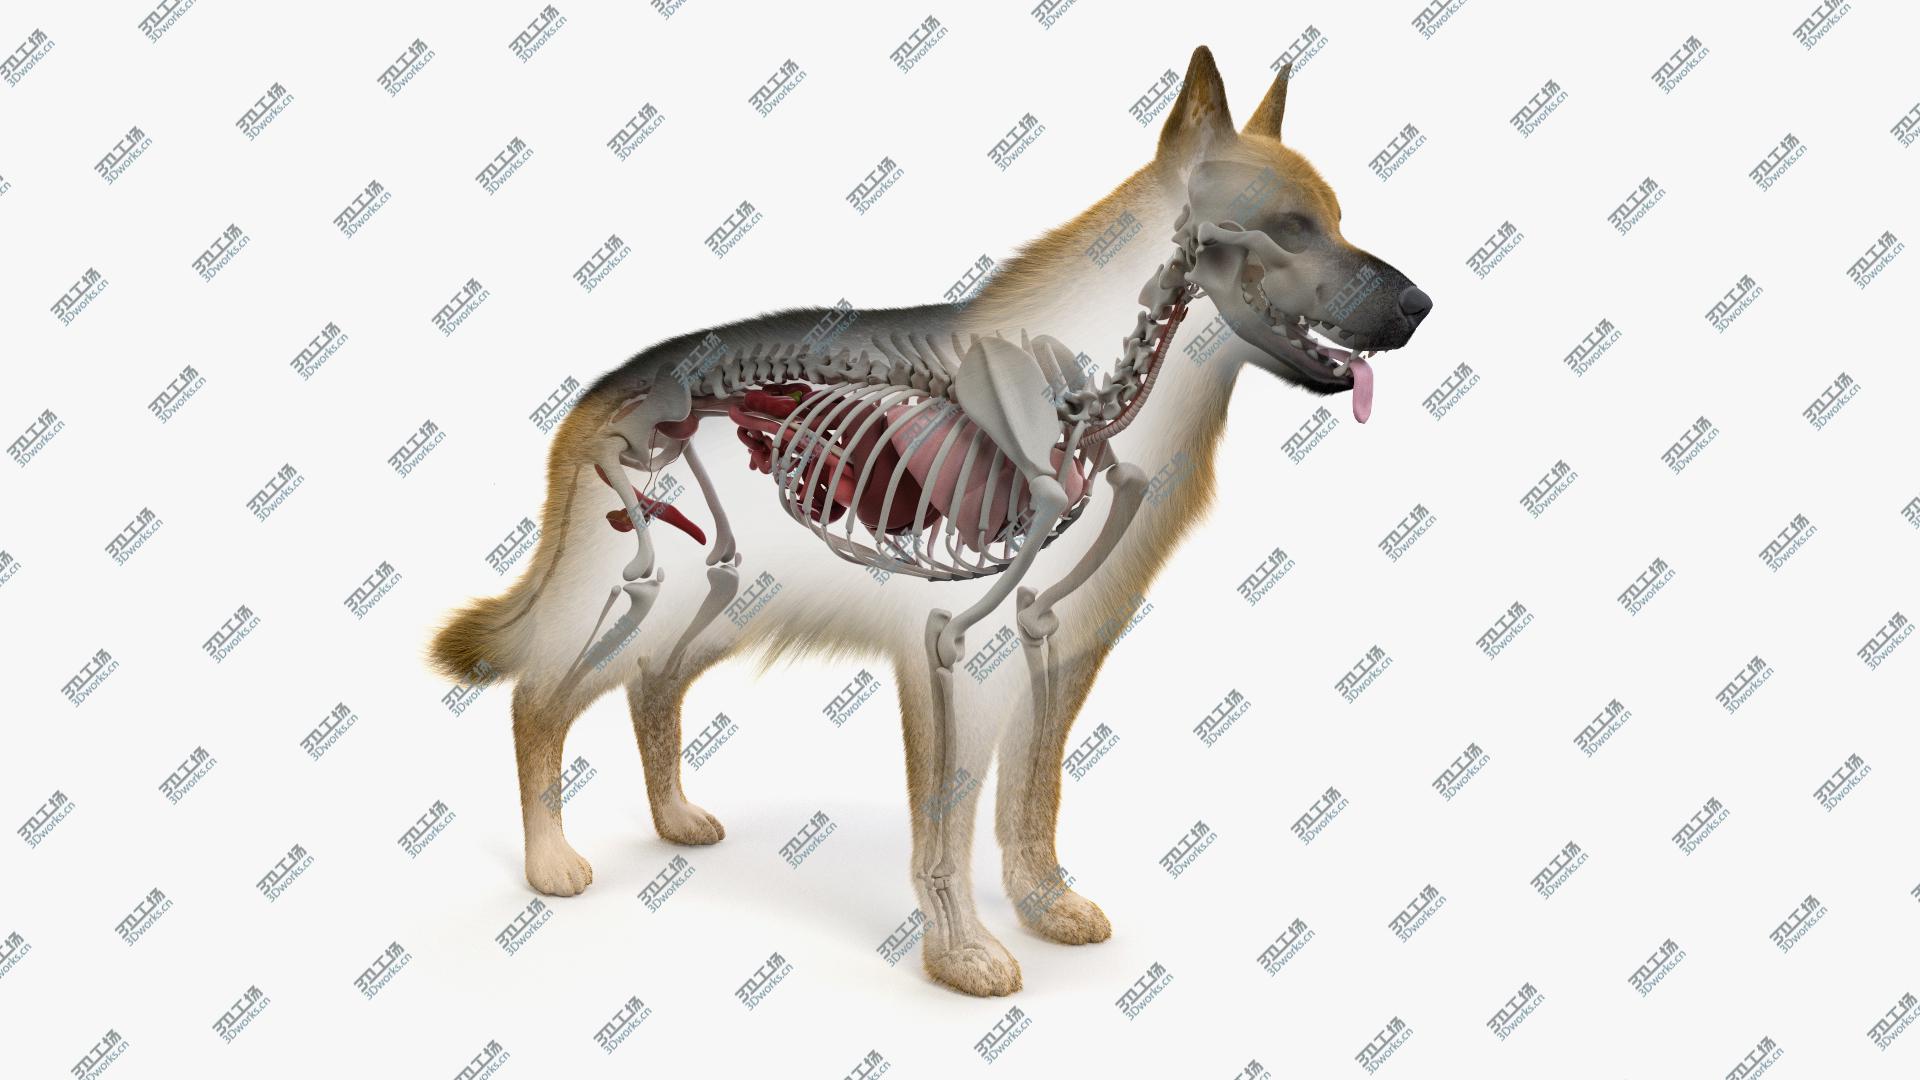 images/goods_img/202105071/Dog Skin, Skeleton And Organs 3D/2.jpg